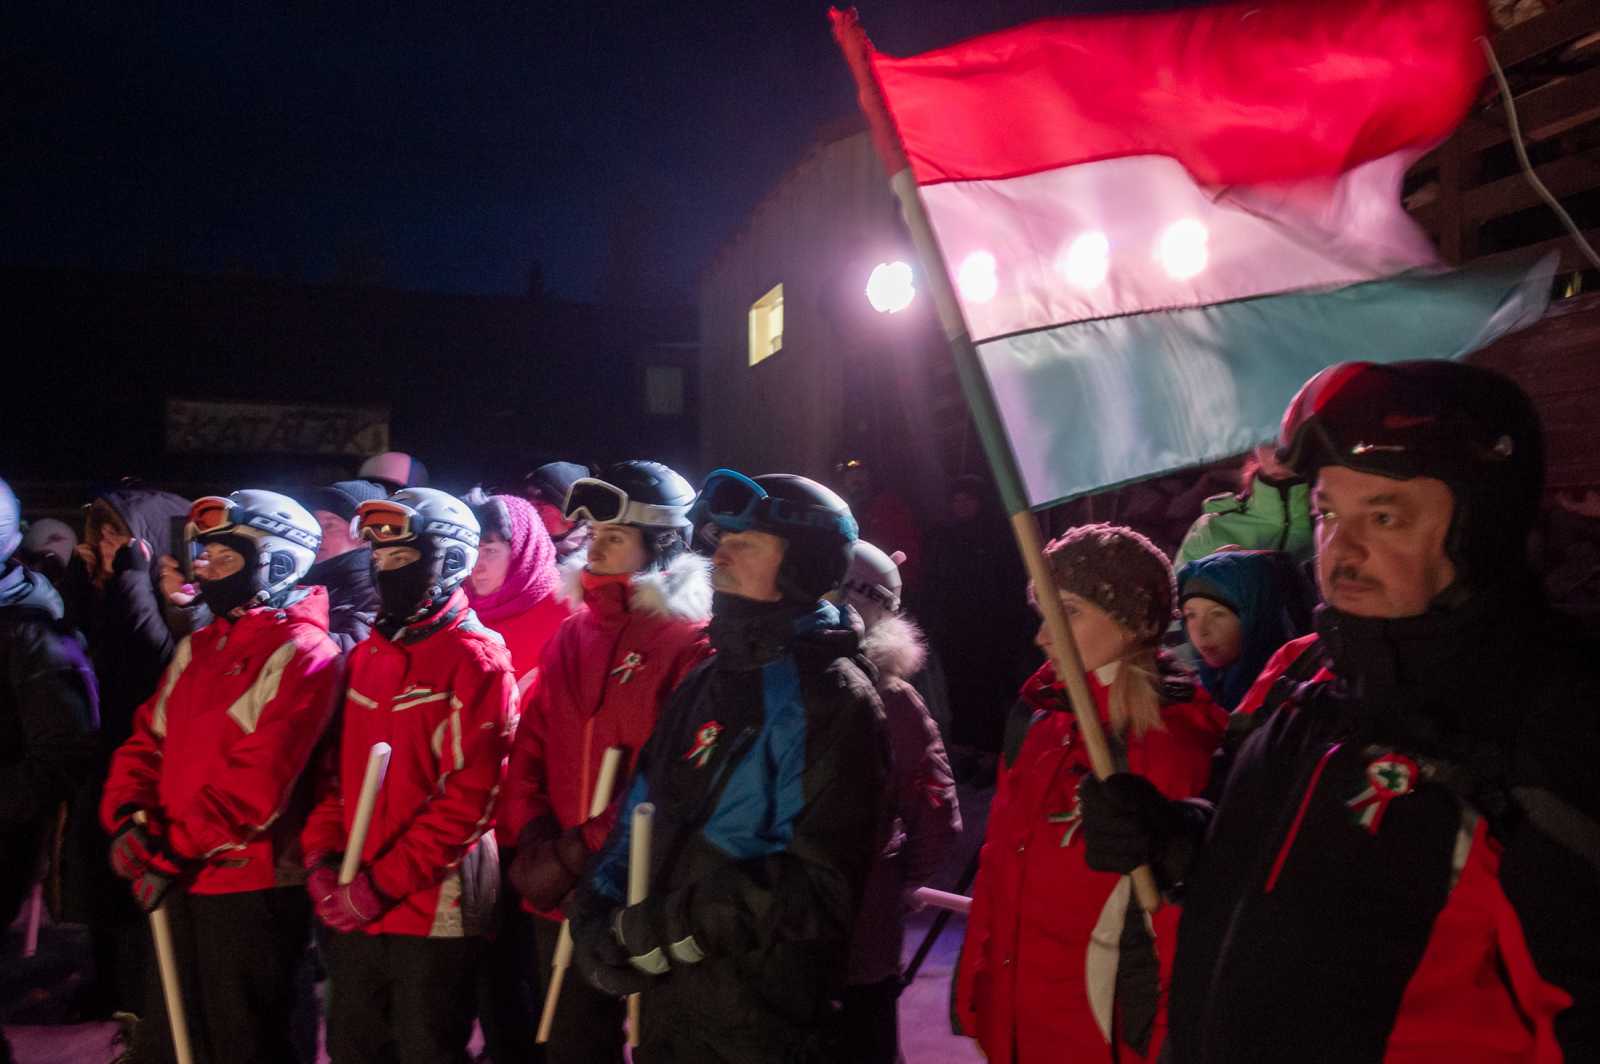 Vörösmarty Szózata és egy Petőfi-vers után az egybegyűltek közösen énekelték el a székely és a magyar himnuszt...